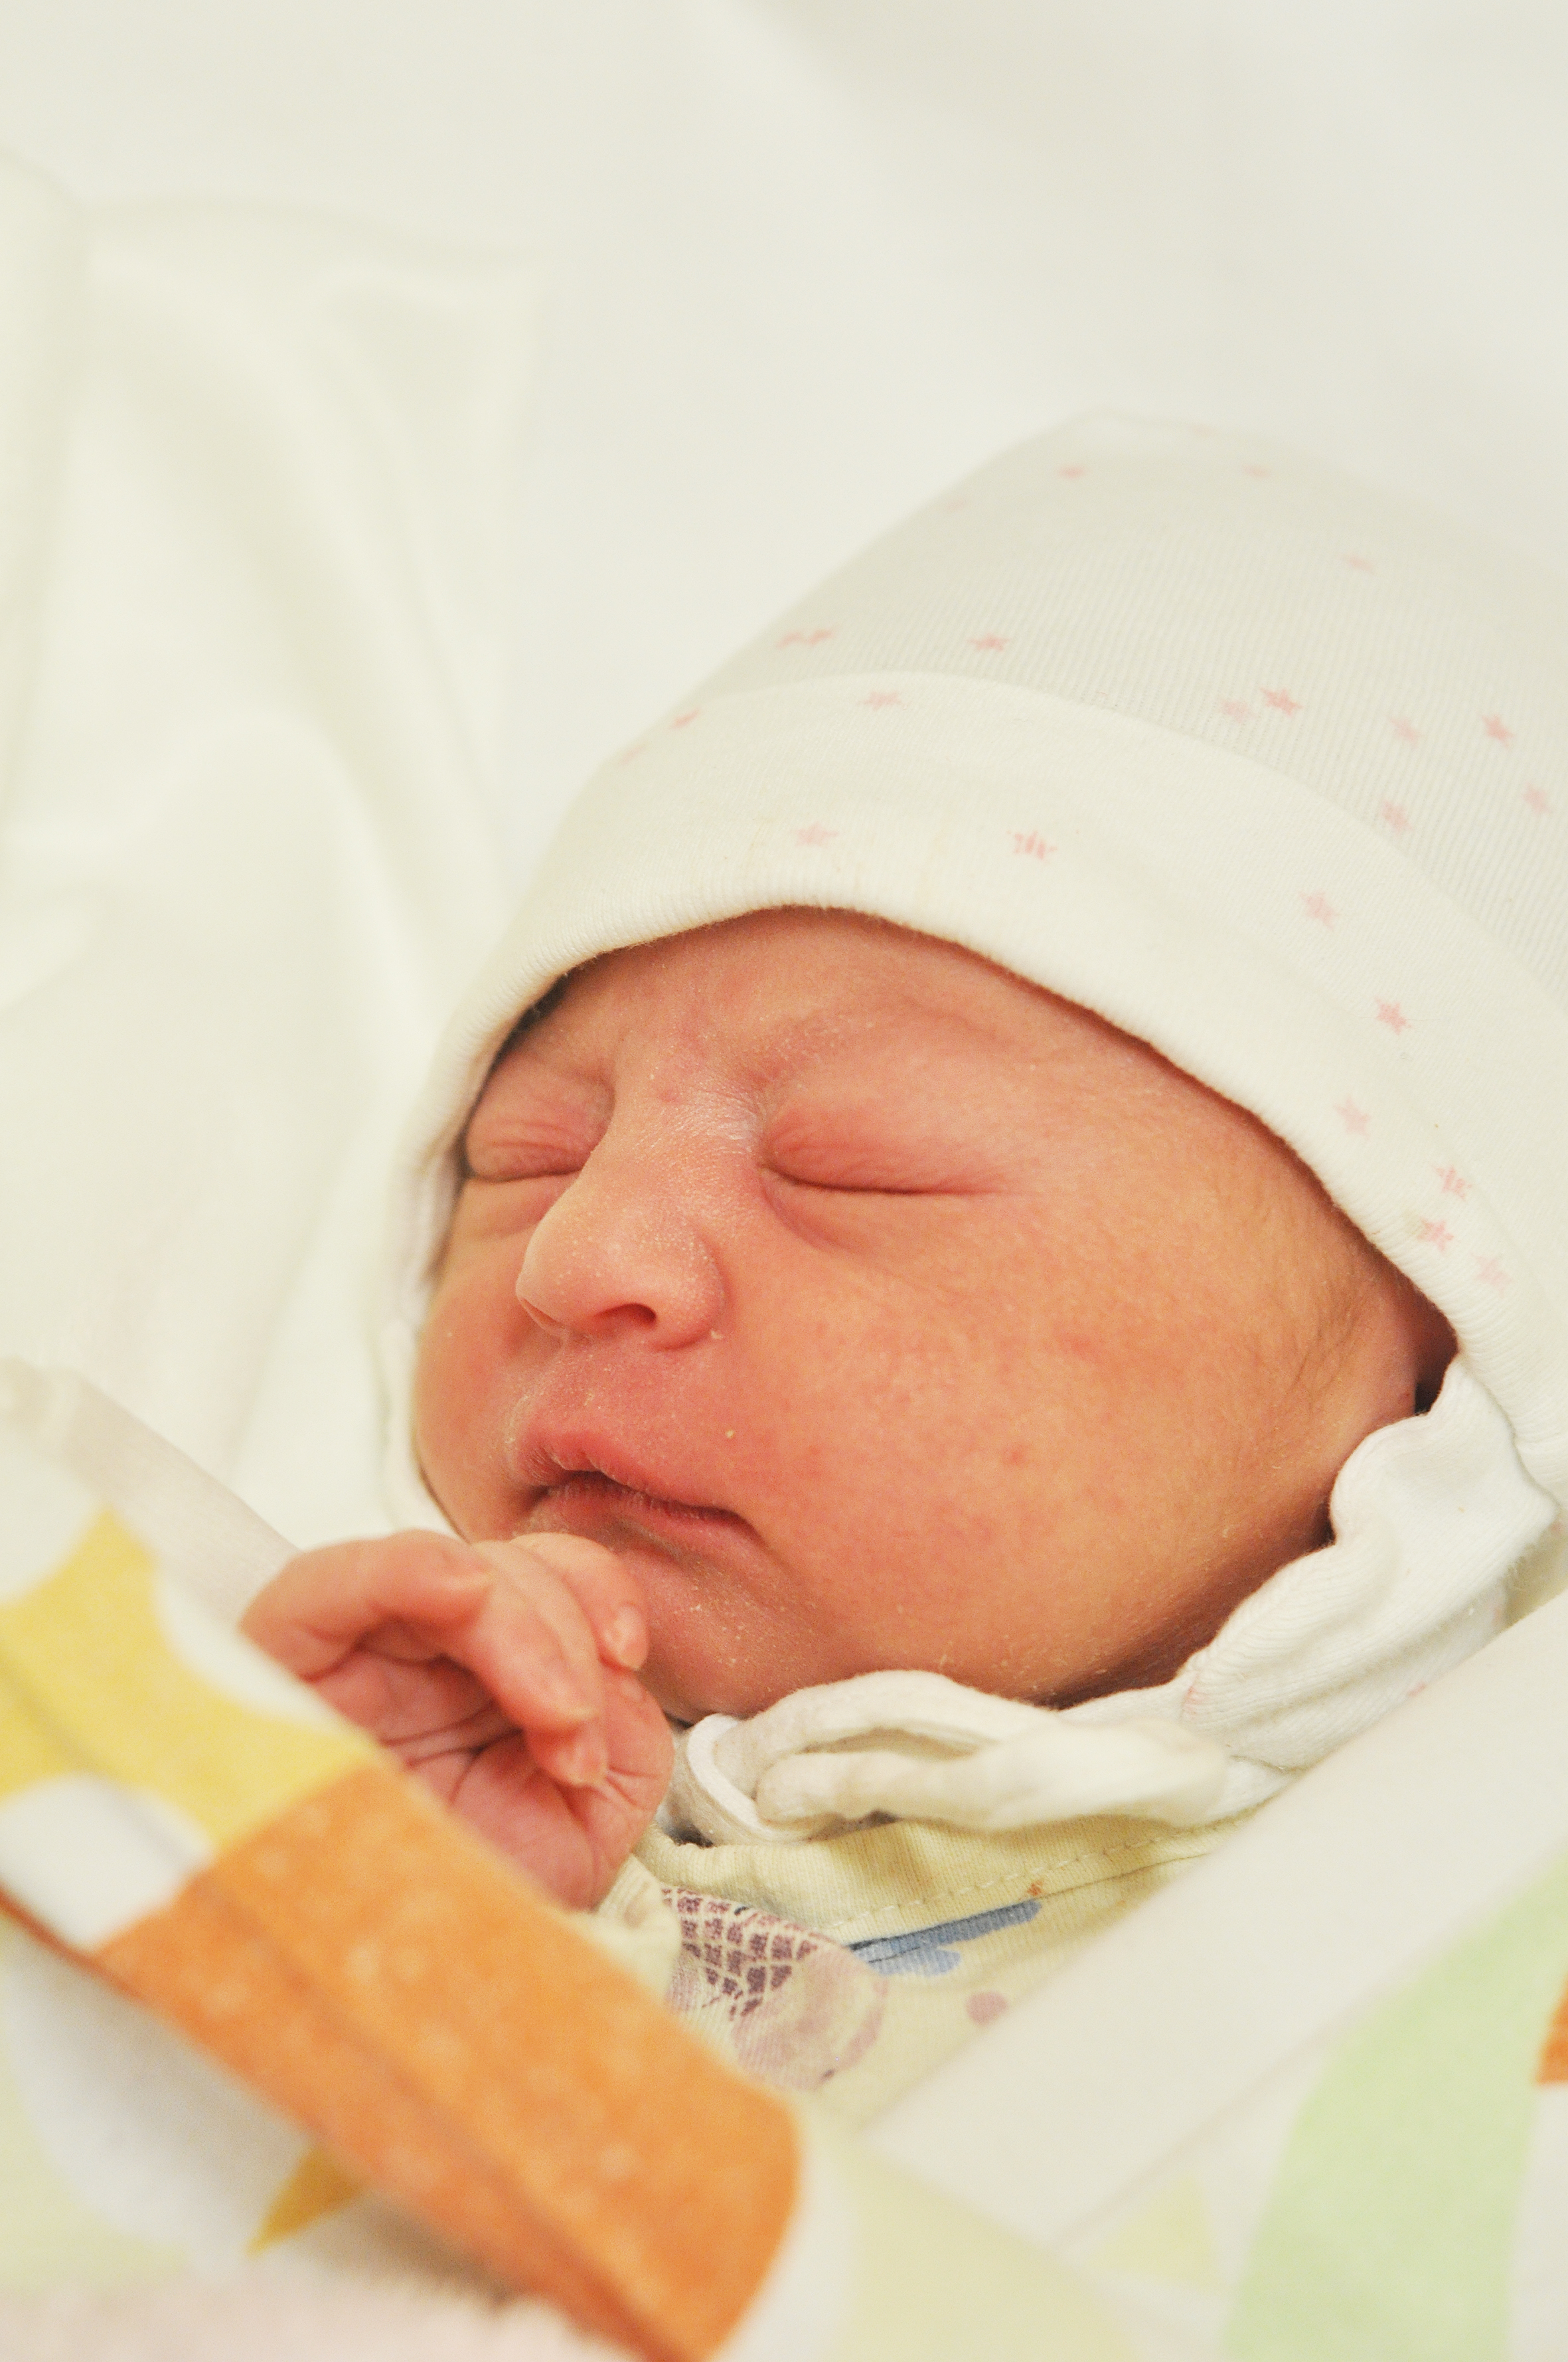 Sara Kondrot przyjechała na Gamowską z Lubomi. Tu urodziła się 5 stycznia o 5.55. Ważąc 3150 g, mierzyła 55 cm. Mama Katarzyna i tato Andrzej są szczęśliwi z narodzin swej pierwszej pociechy.